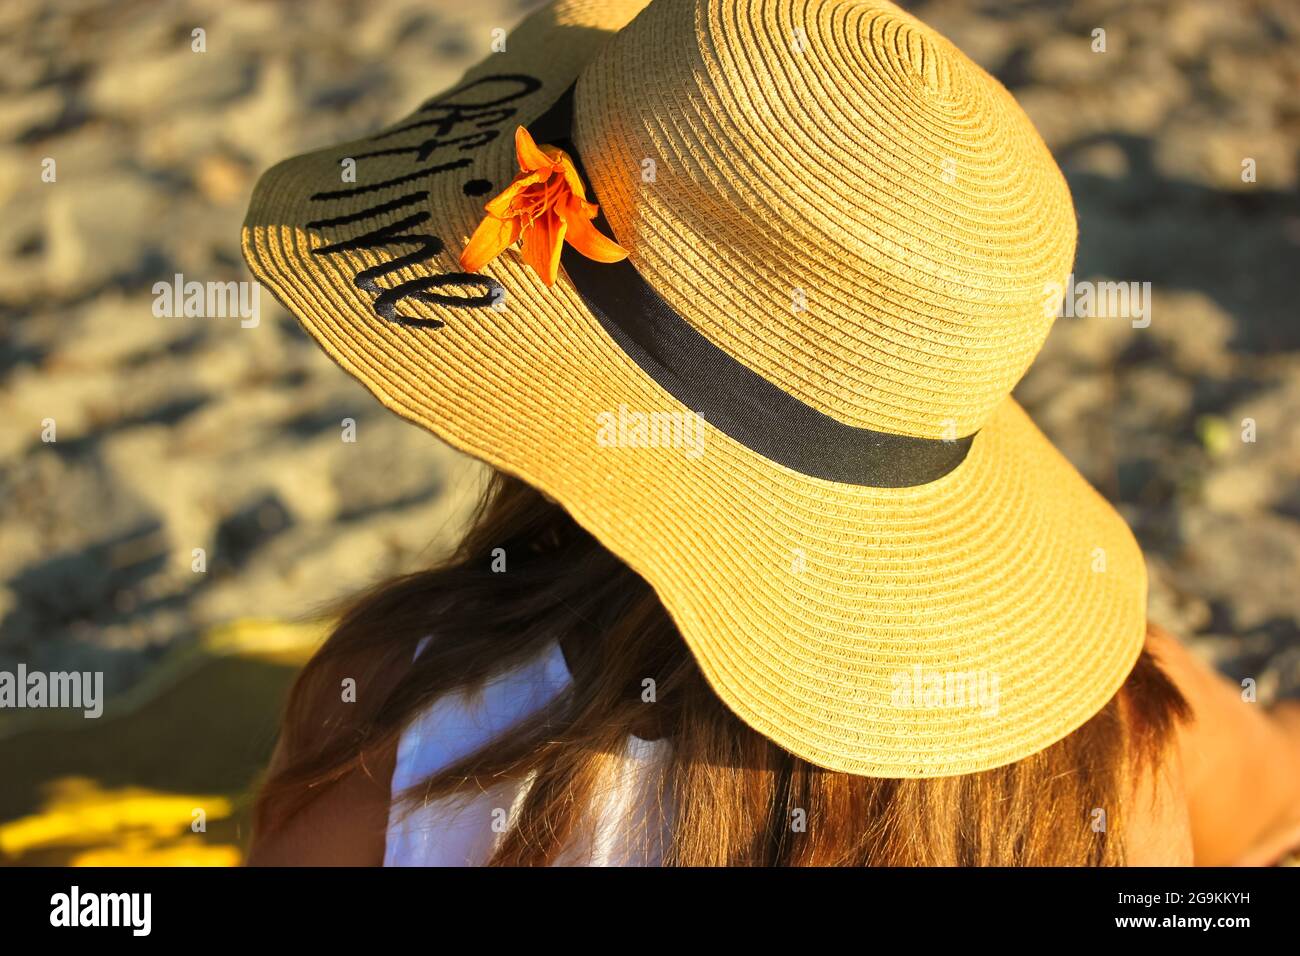 Una ragazza in un cappello di paglia con una parola scritta Offline su di  esso, adornata con un giglio arancione sta riposando sul mare in una  giornata estiva soleggiata. Vista dal b